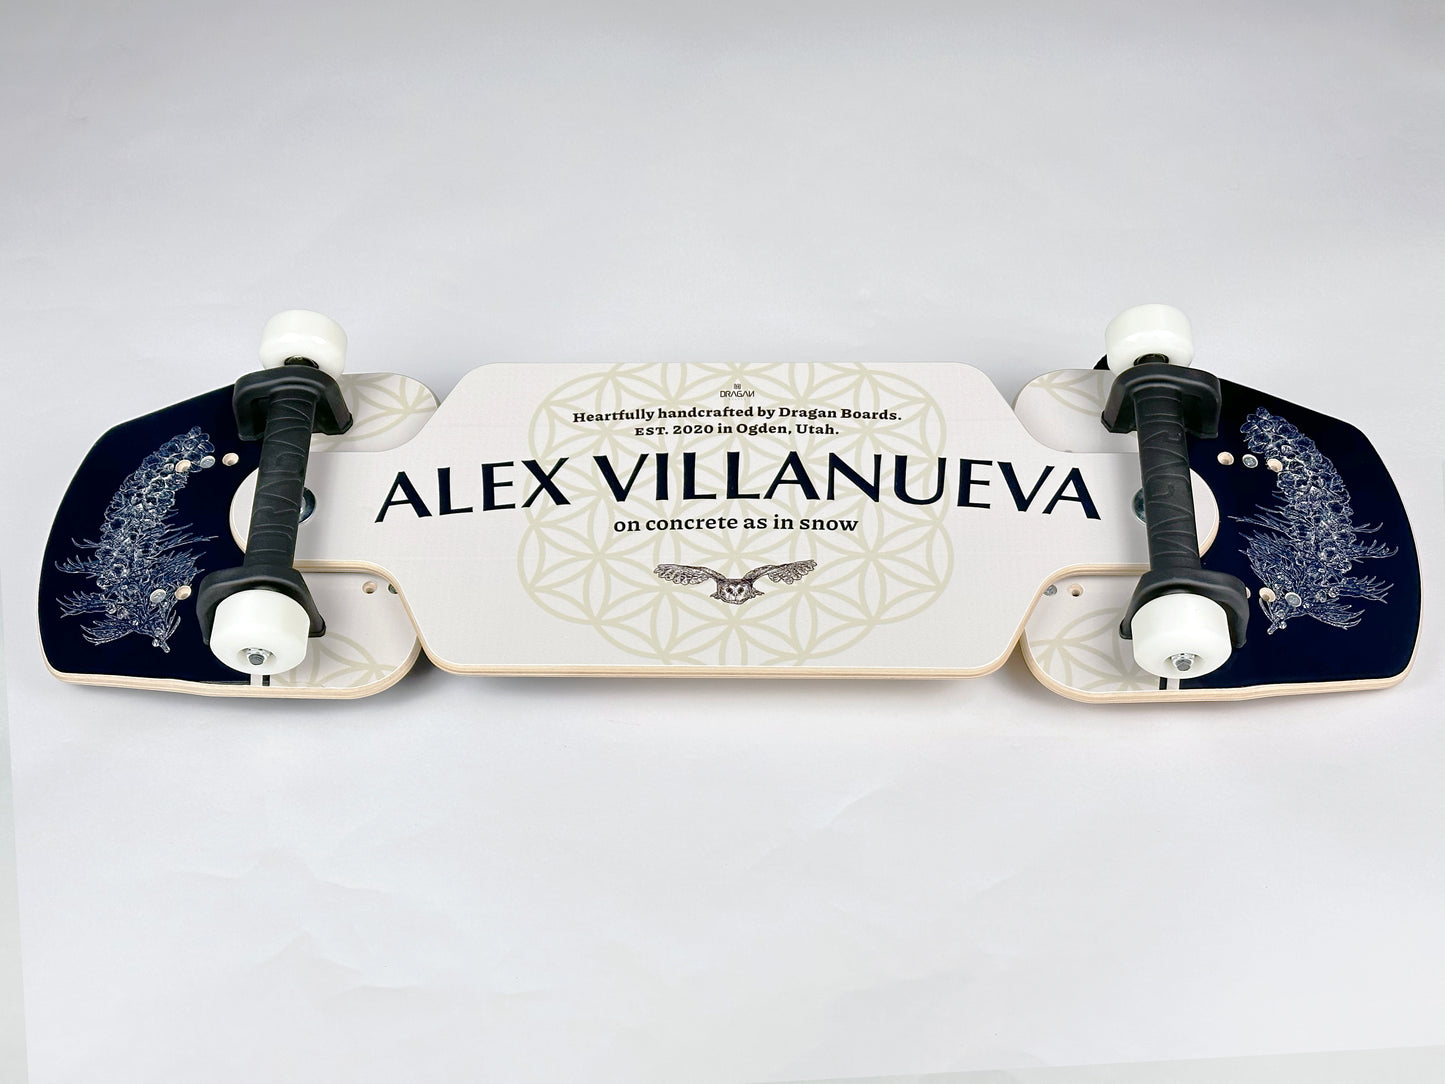 The Pro Streetboard: Alex Villanueva Signature Edition